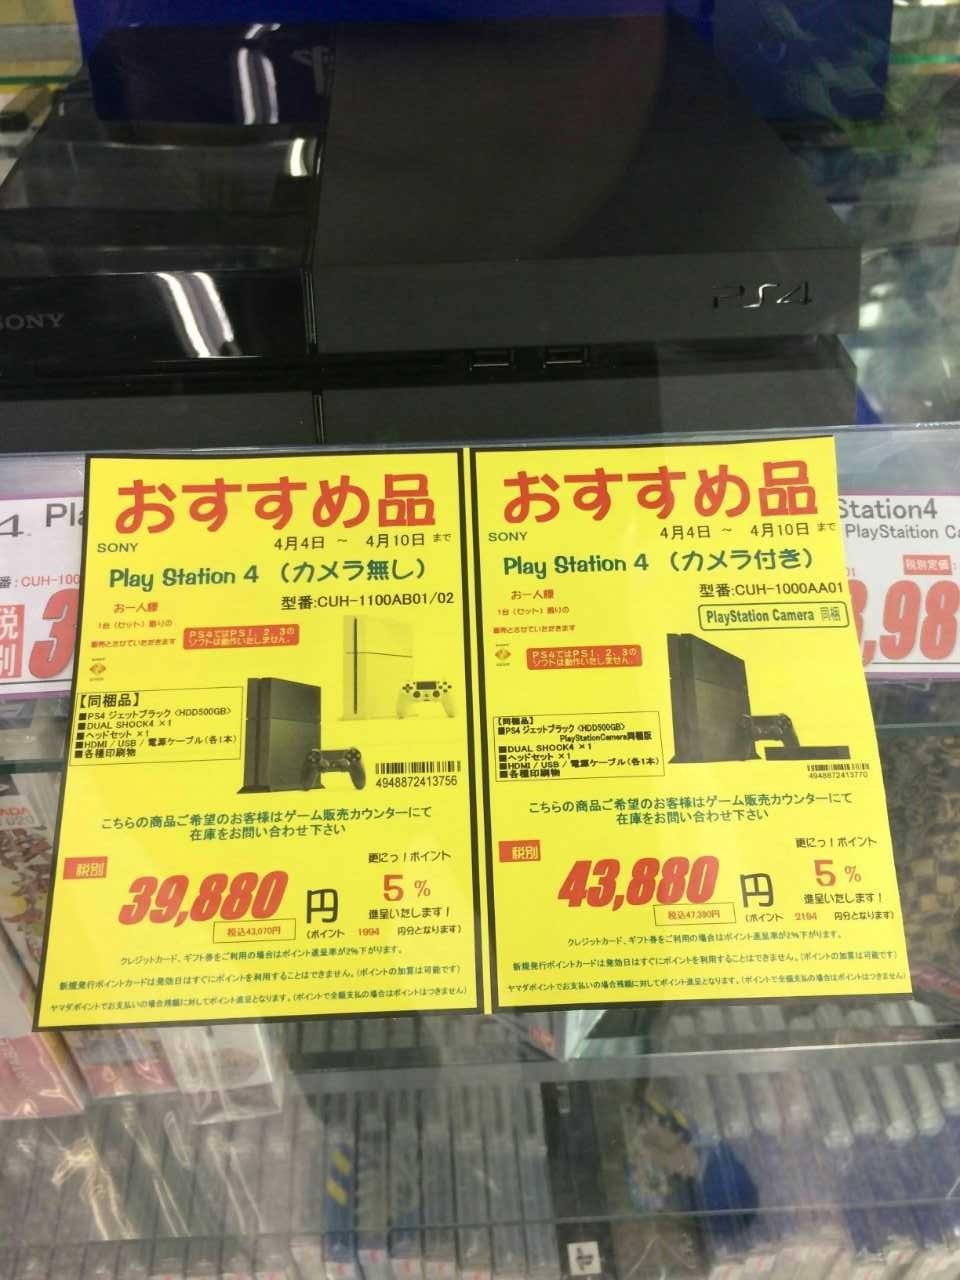 托朋友在日本带PS4,但是人到了却看不懂买哪